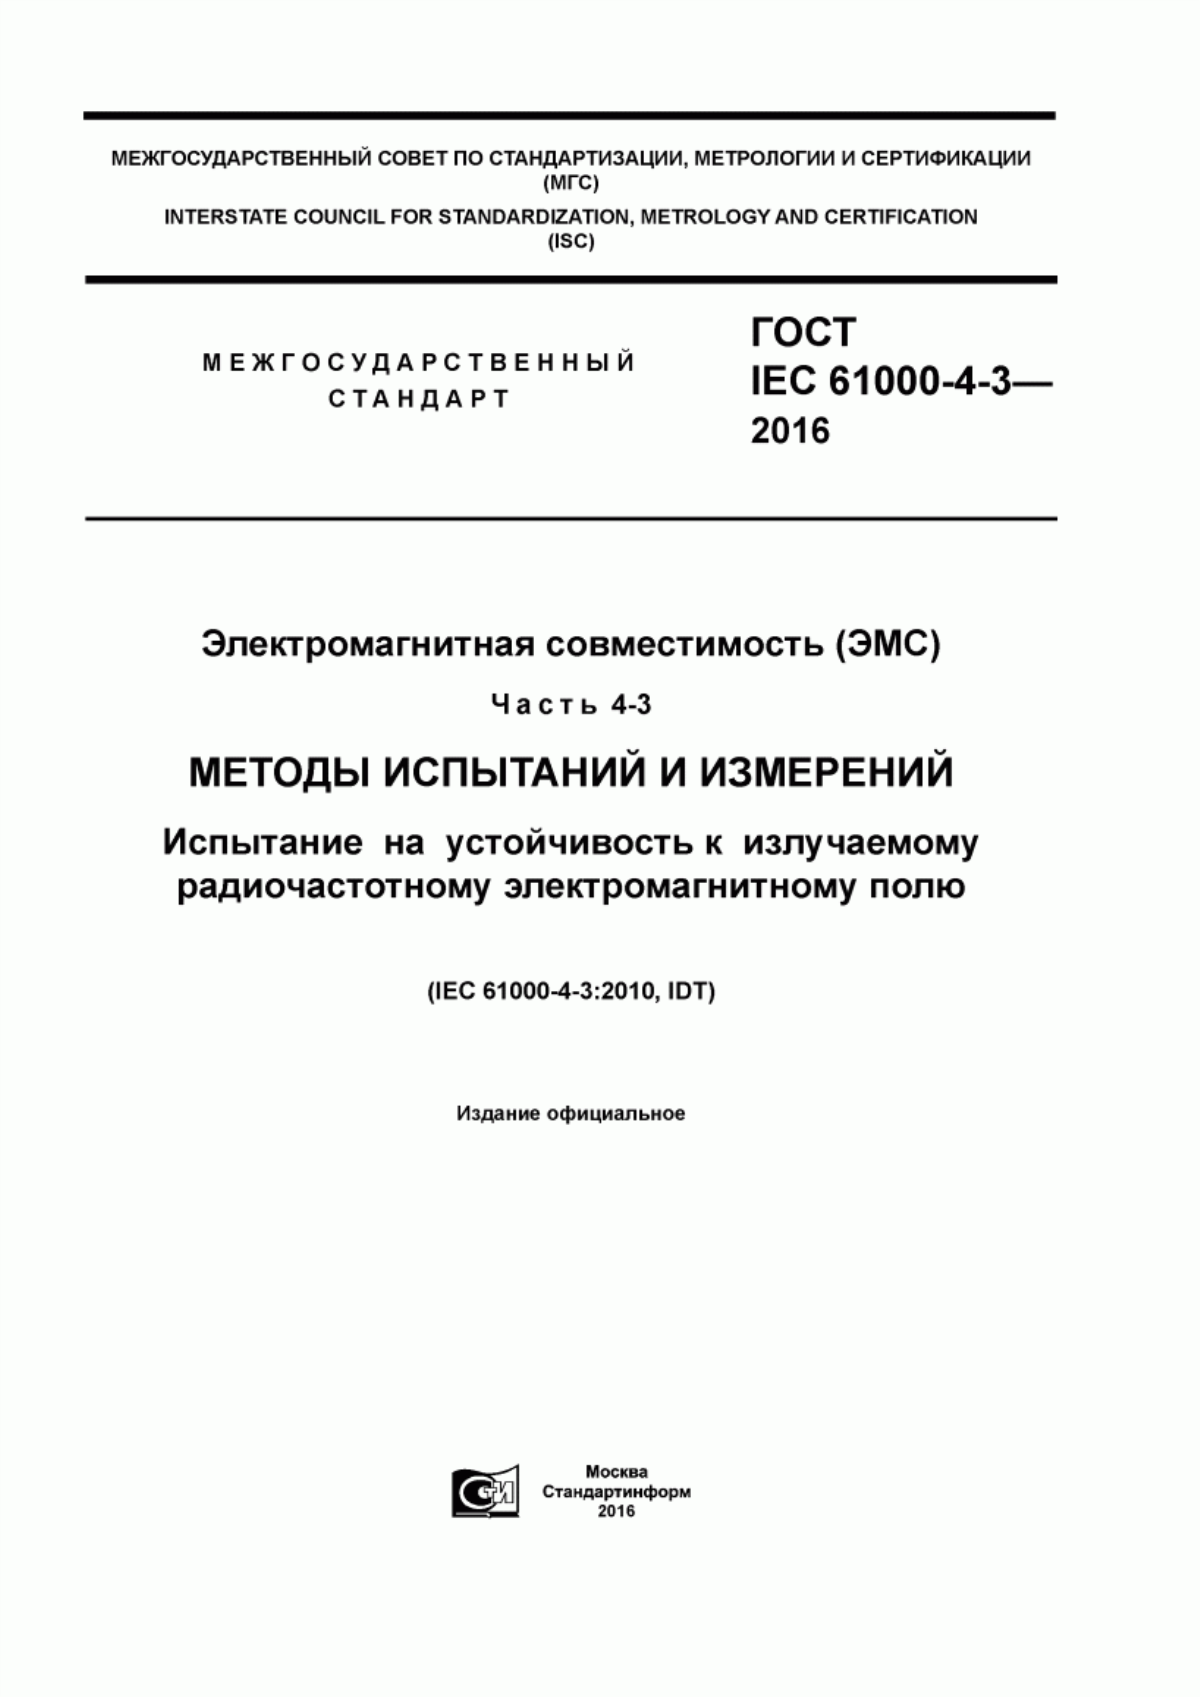 ГОСТ IEC 61000-4-3-2016 Электромагнитная совместимость (ЭМС). Часть 4-3. Методы испытаний и измерений. Испытание на устойчивость к излучаемому радиочастотному электромагнитному полю